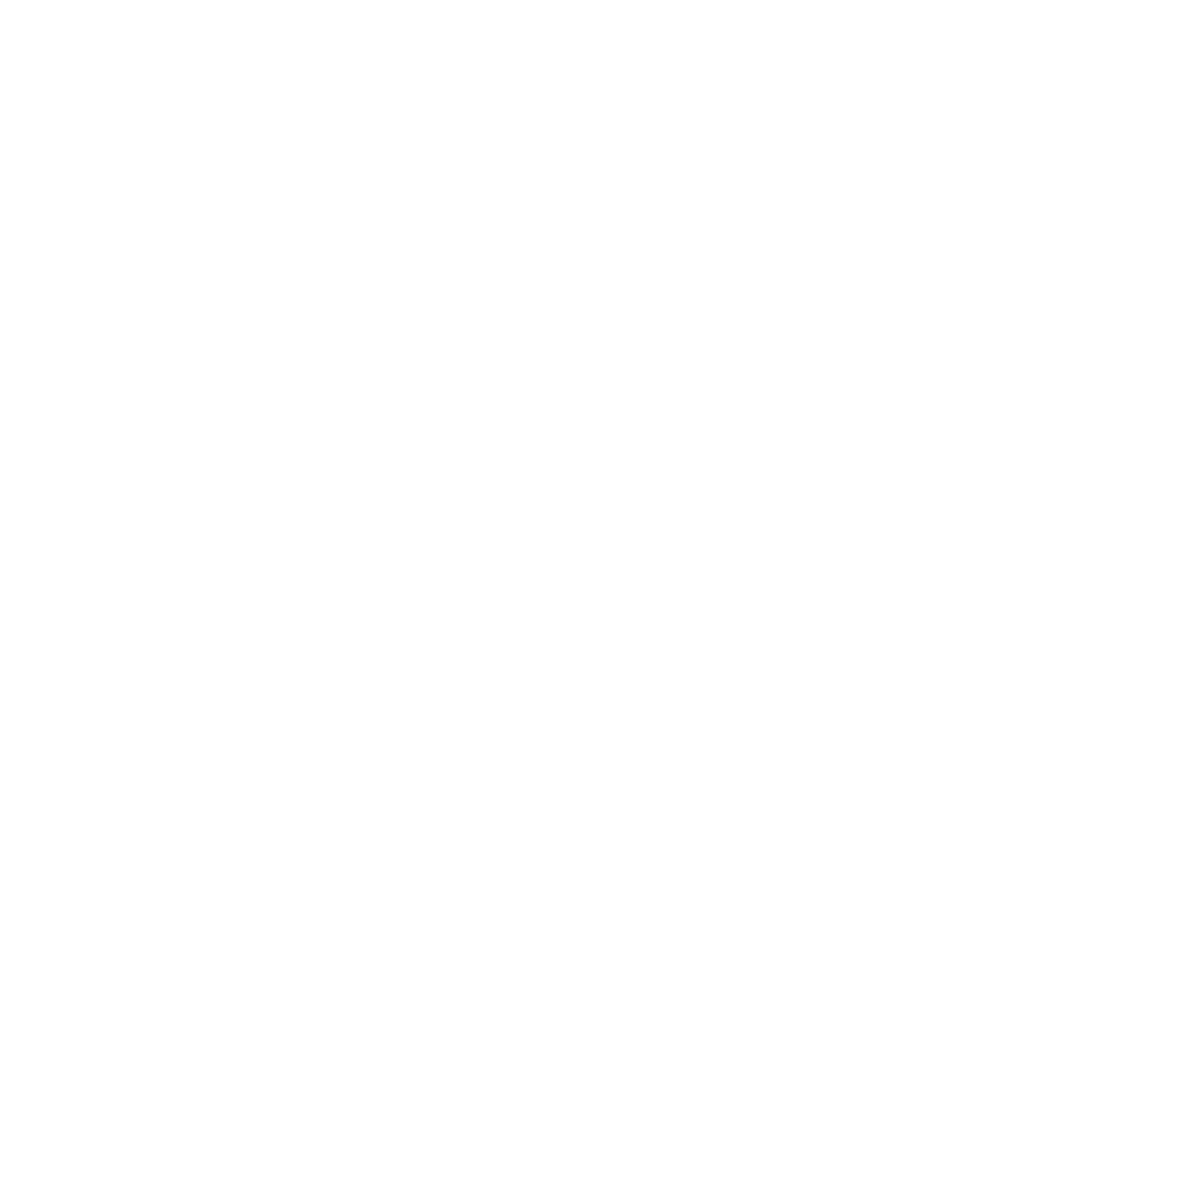 LIBRA People Company PLC